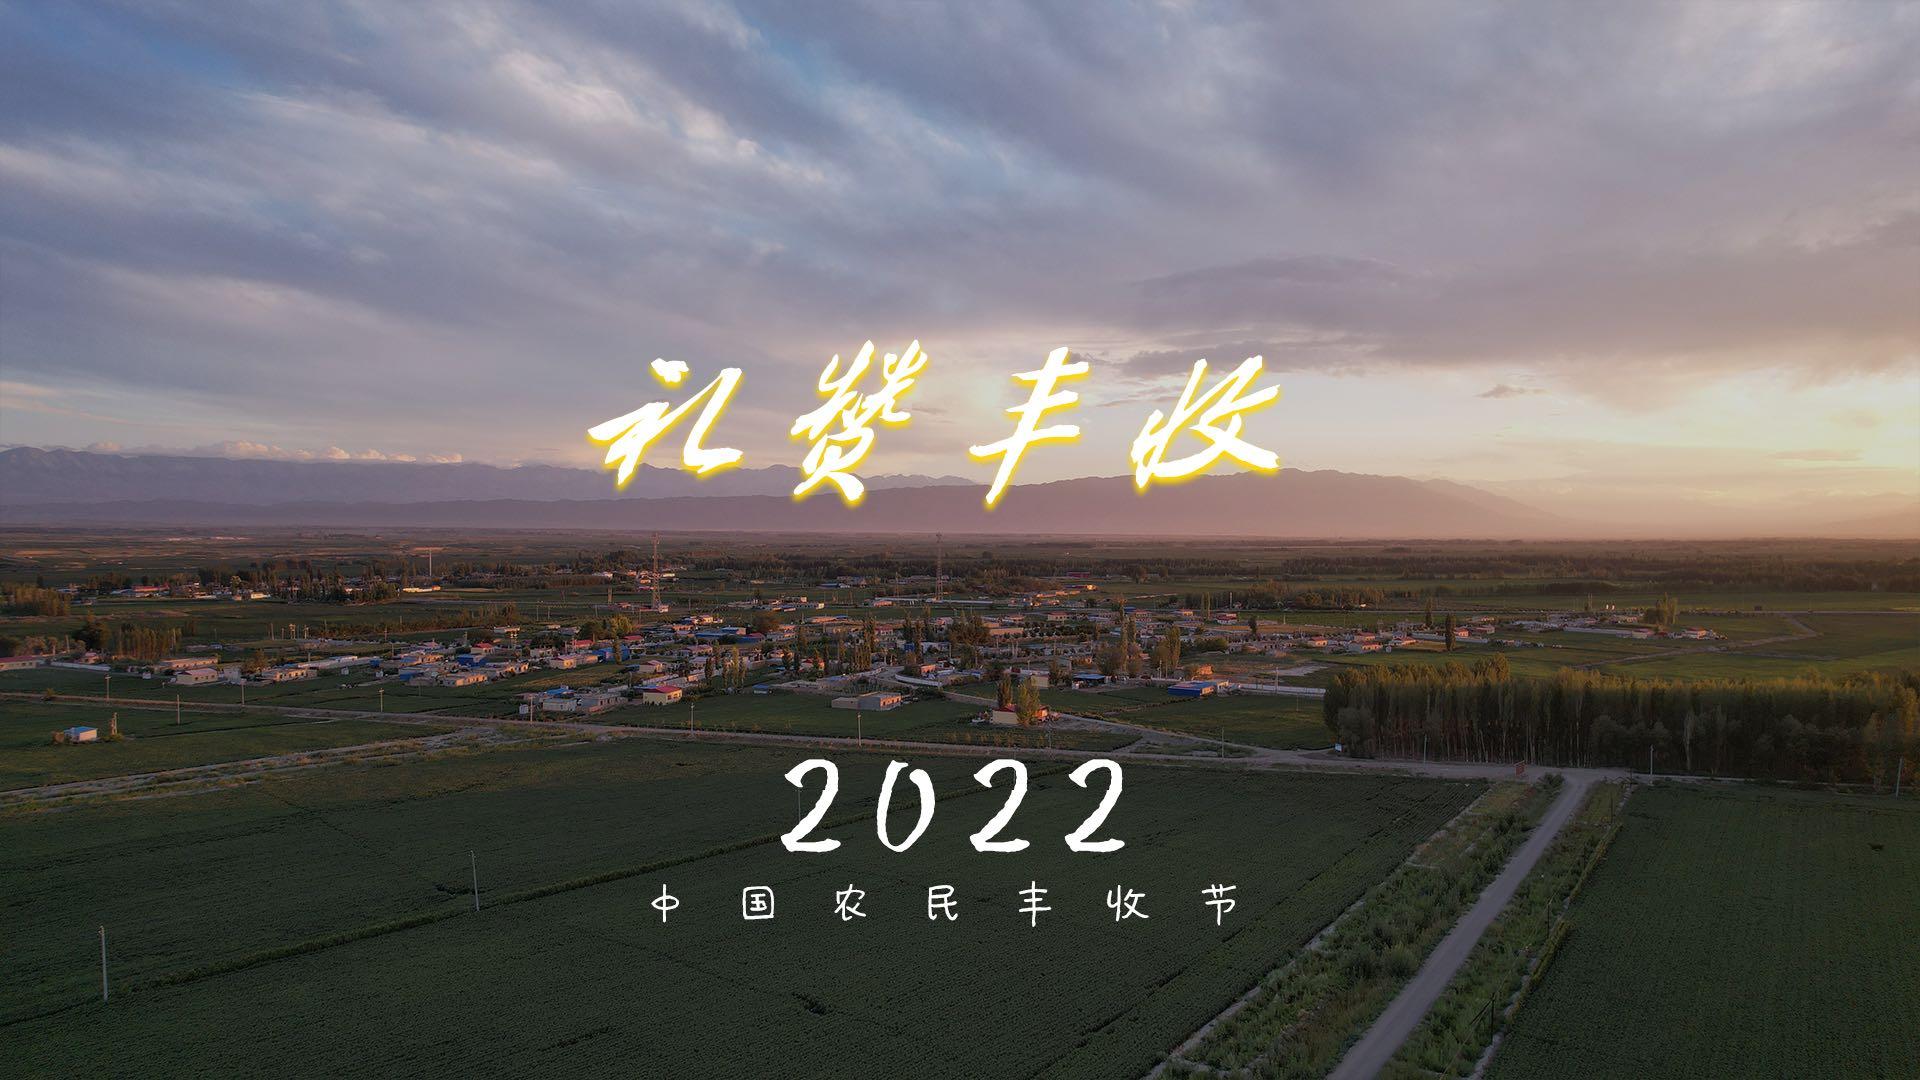 2022中国农民丰收节